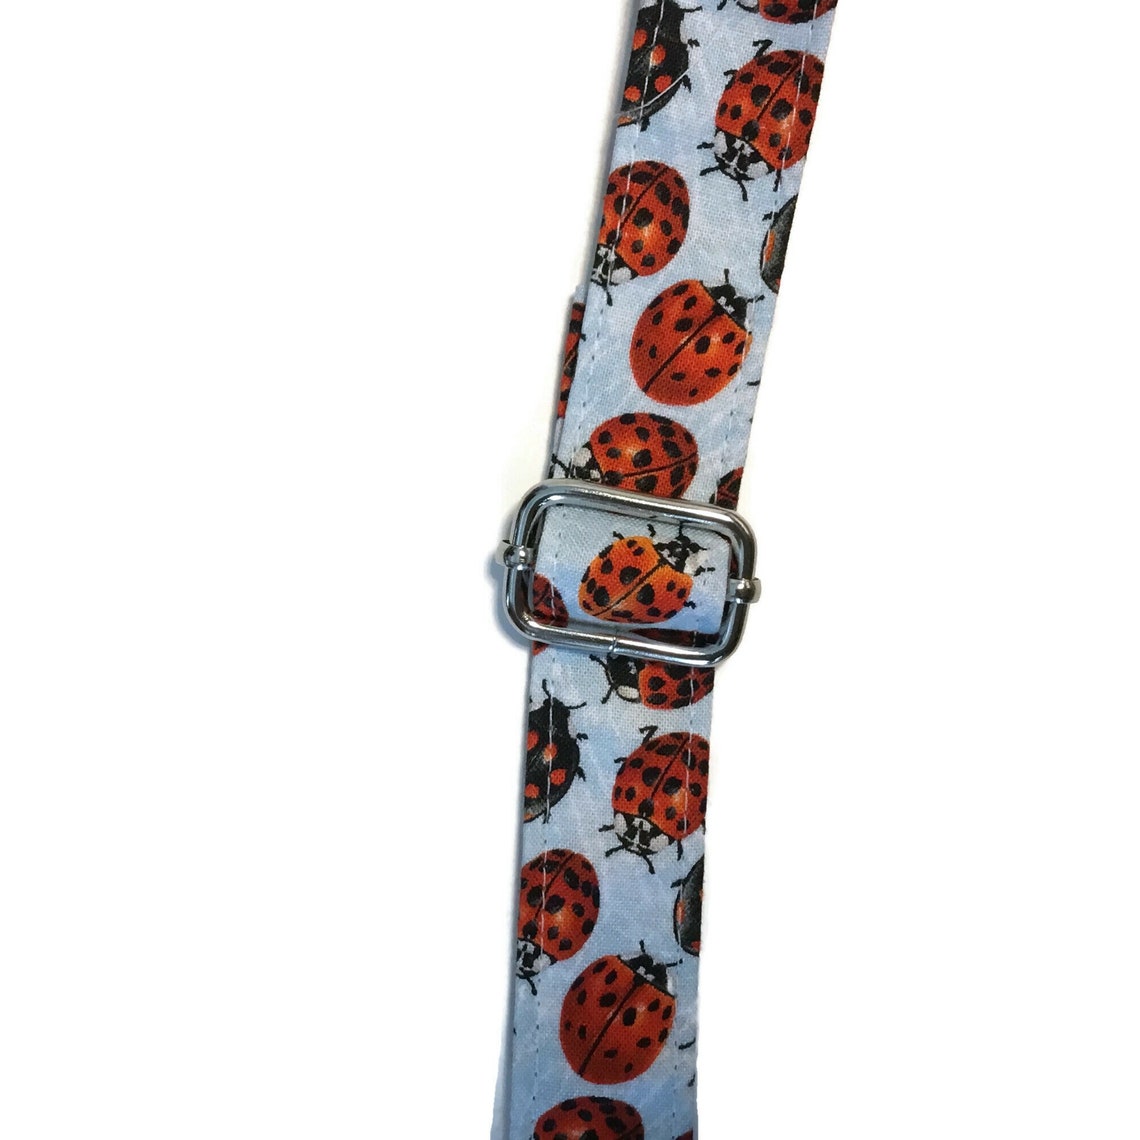 Ladybug Crossbody Bag Small Zipper Purse with Ladybugs | Etsy